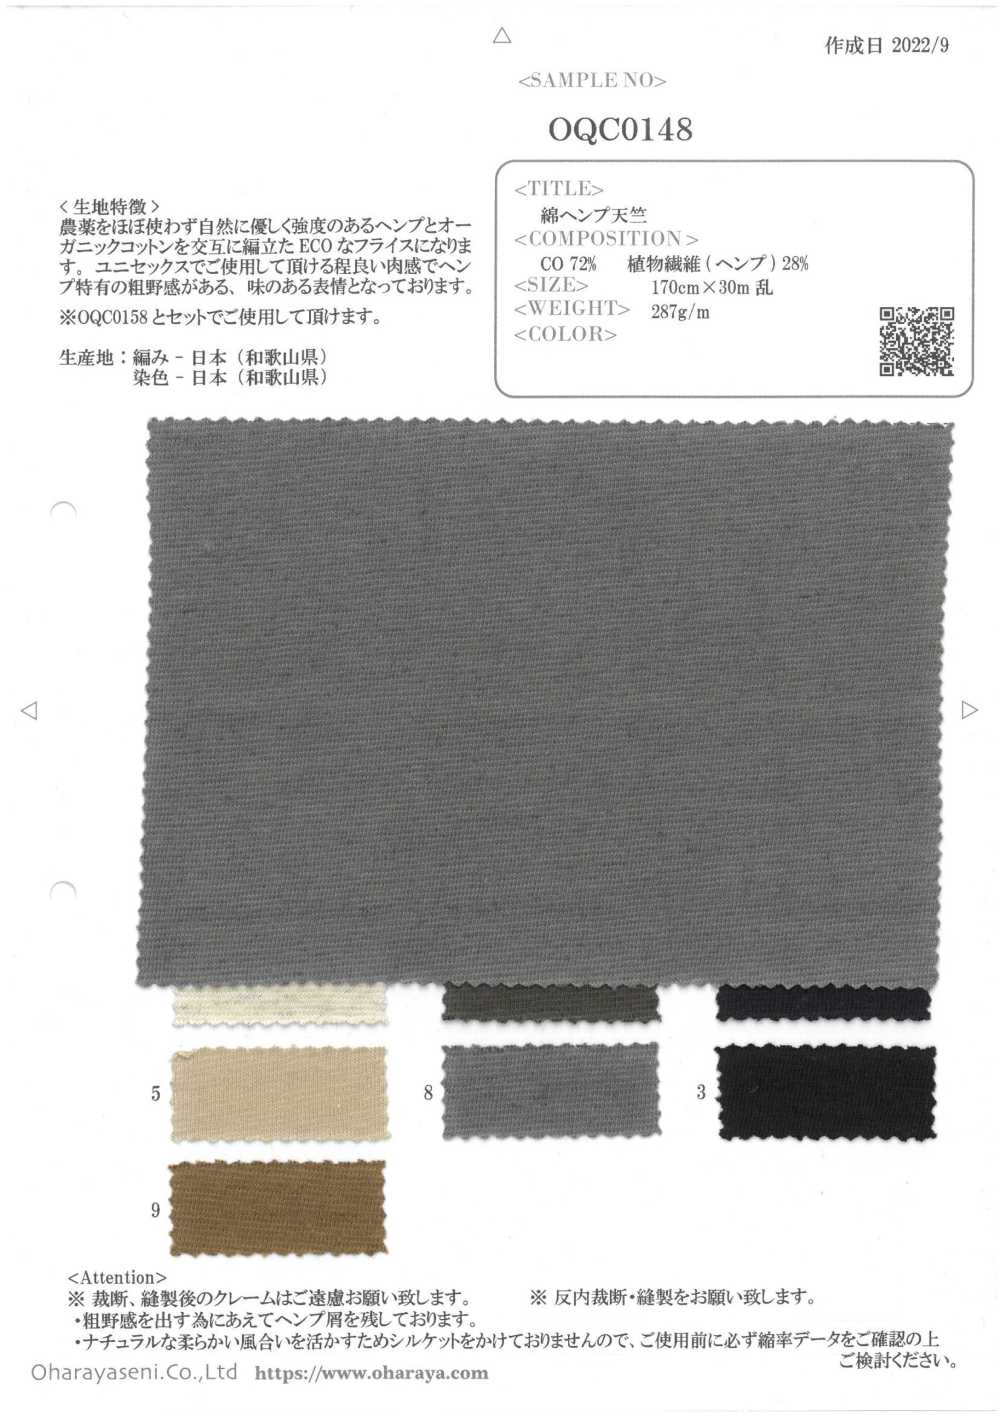 OQC0148 Jersey De Coton Et De Chanvre[Fabrication De Textile] Oharayaseni